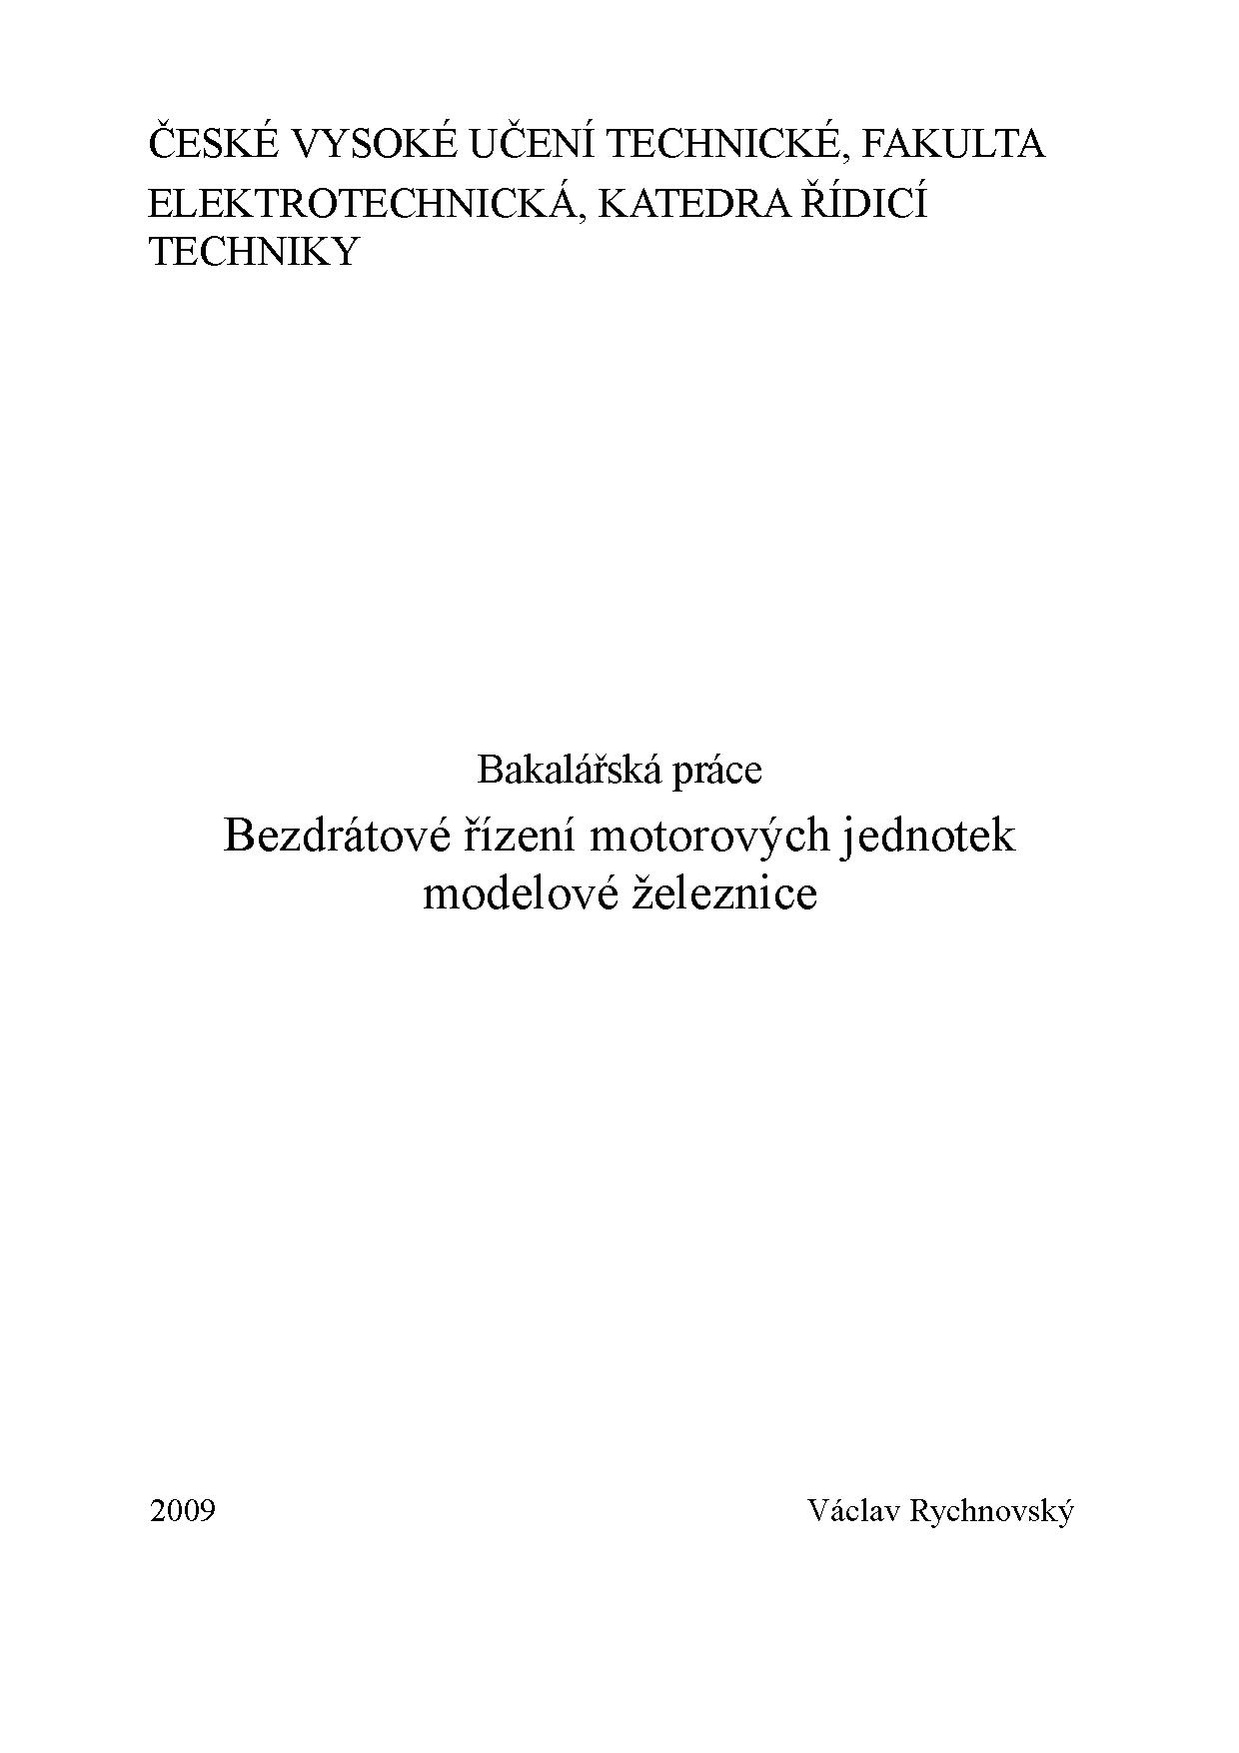 Bp 2009 rychnovsky vaclav.pdf